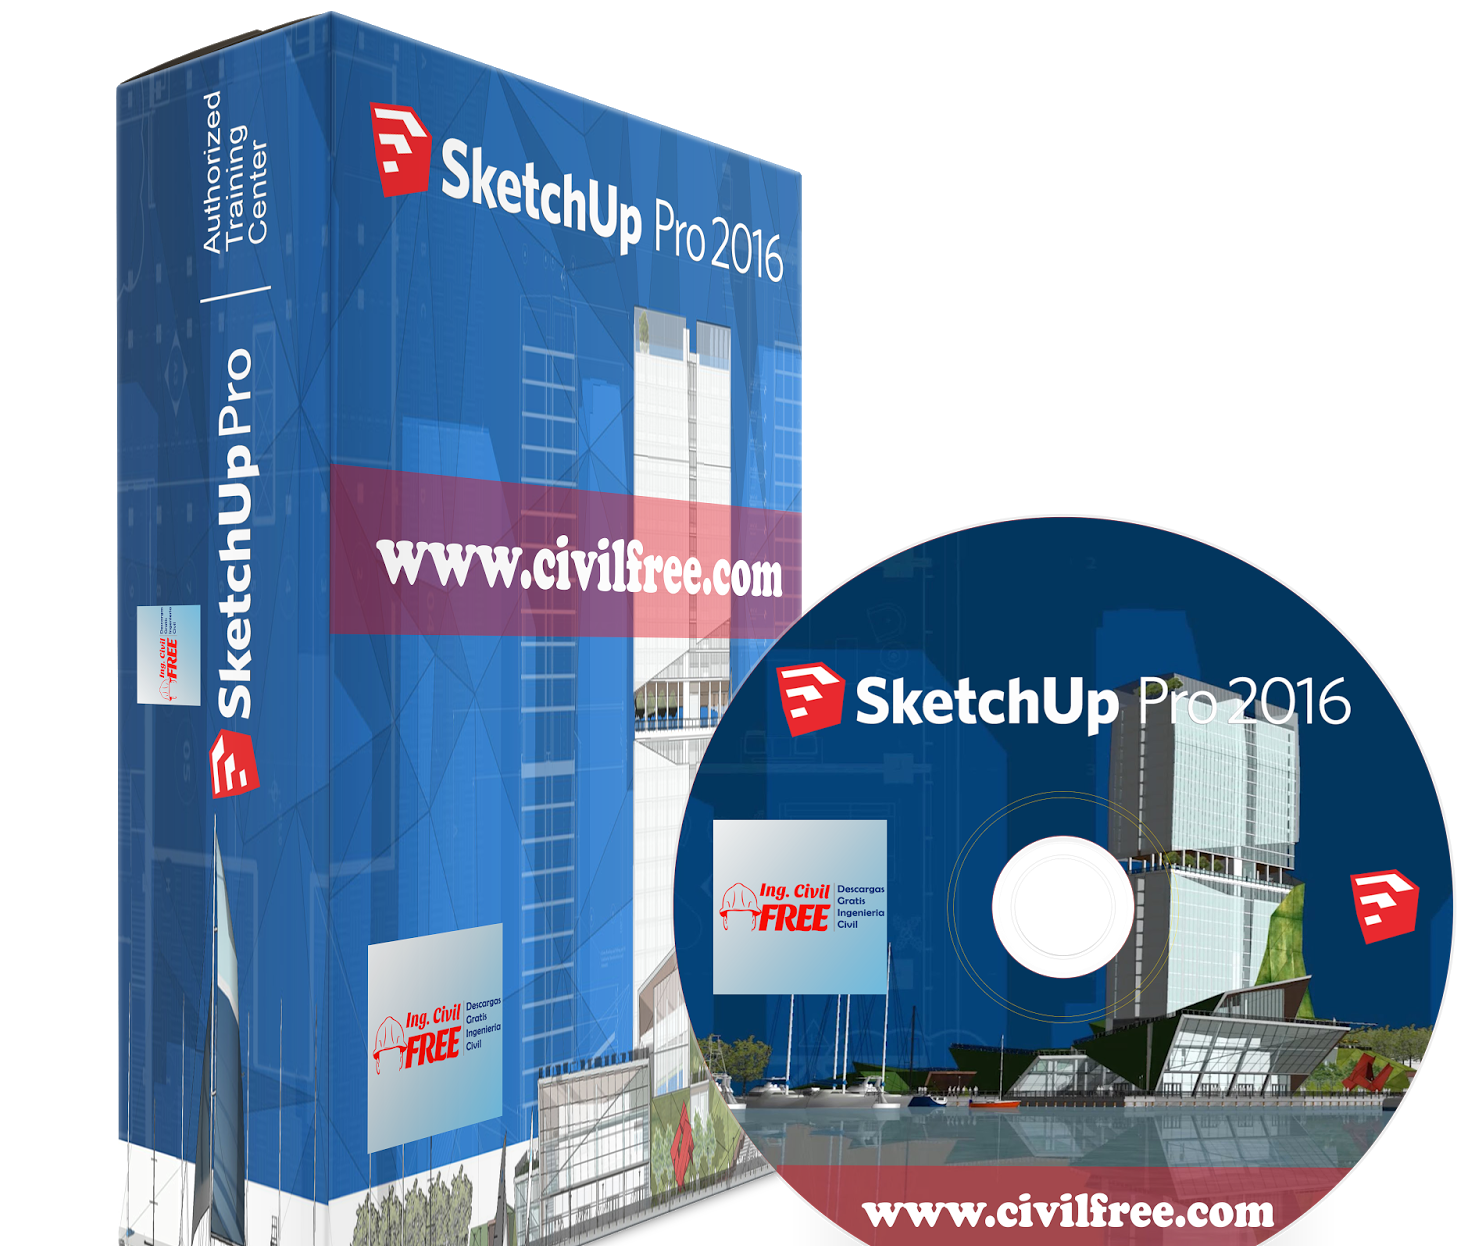 sketchup pro 2016 free download full version 32 bit